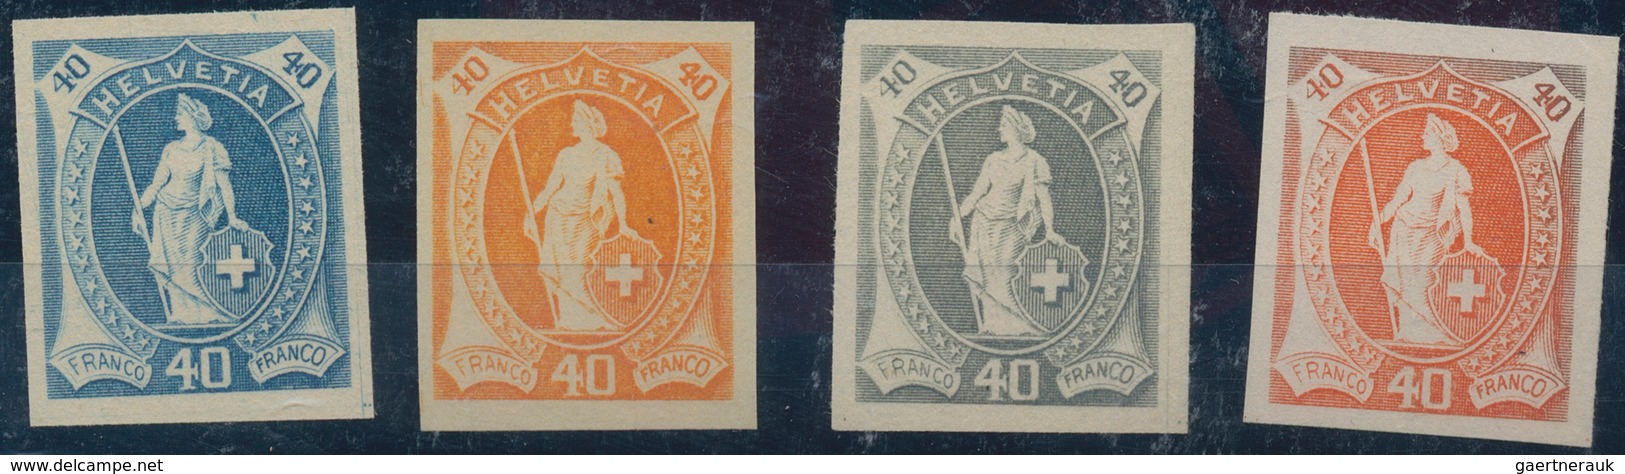 Schweiz: 1860/1950 (ca.), Marken-Partie Auf Steckkarten, Incl. Einigen Besonderheiten, Besseren Wert - Sammlungen